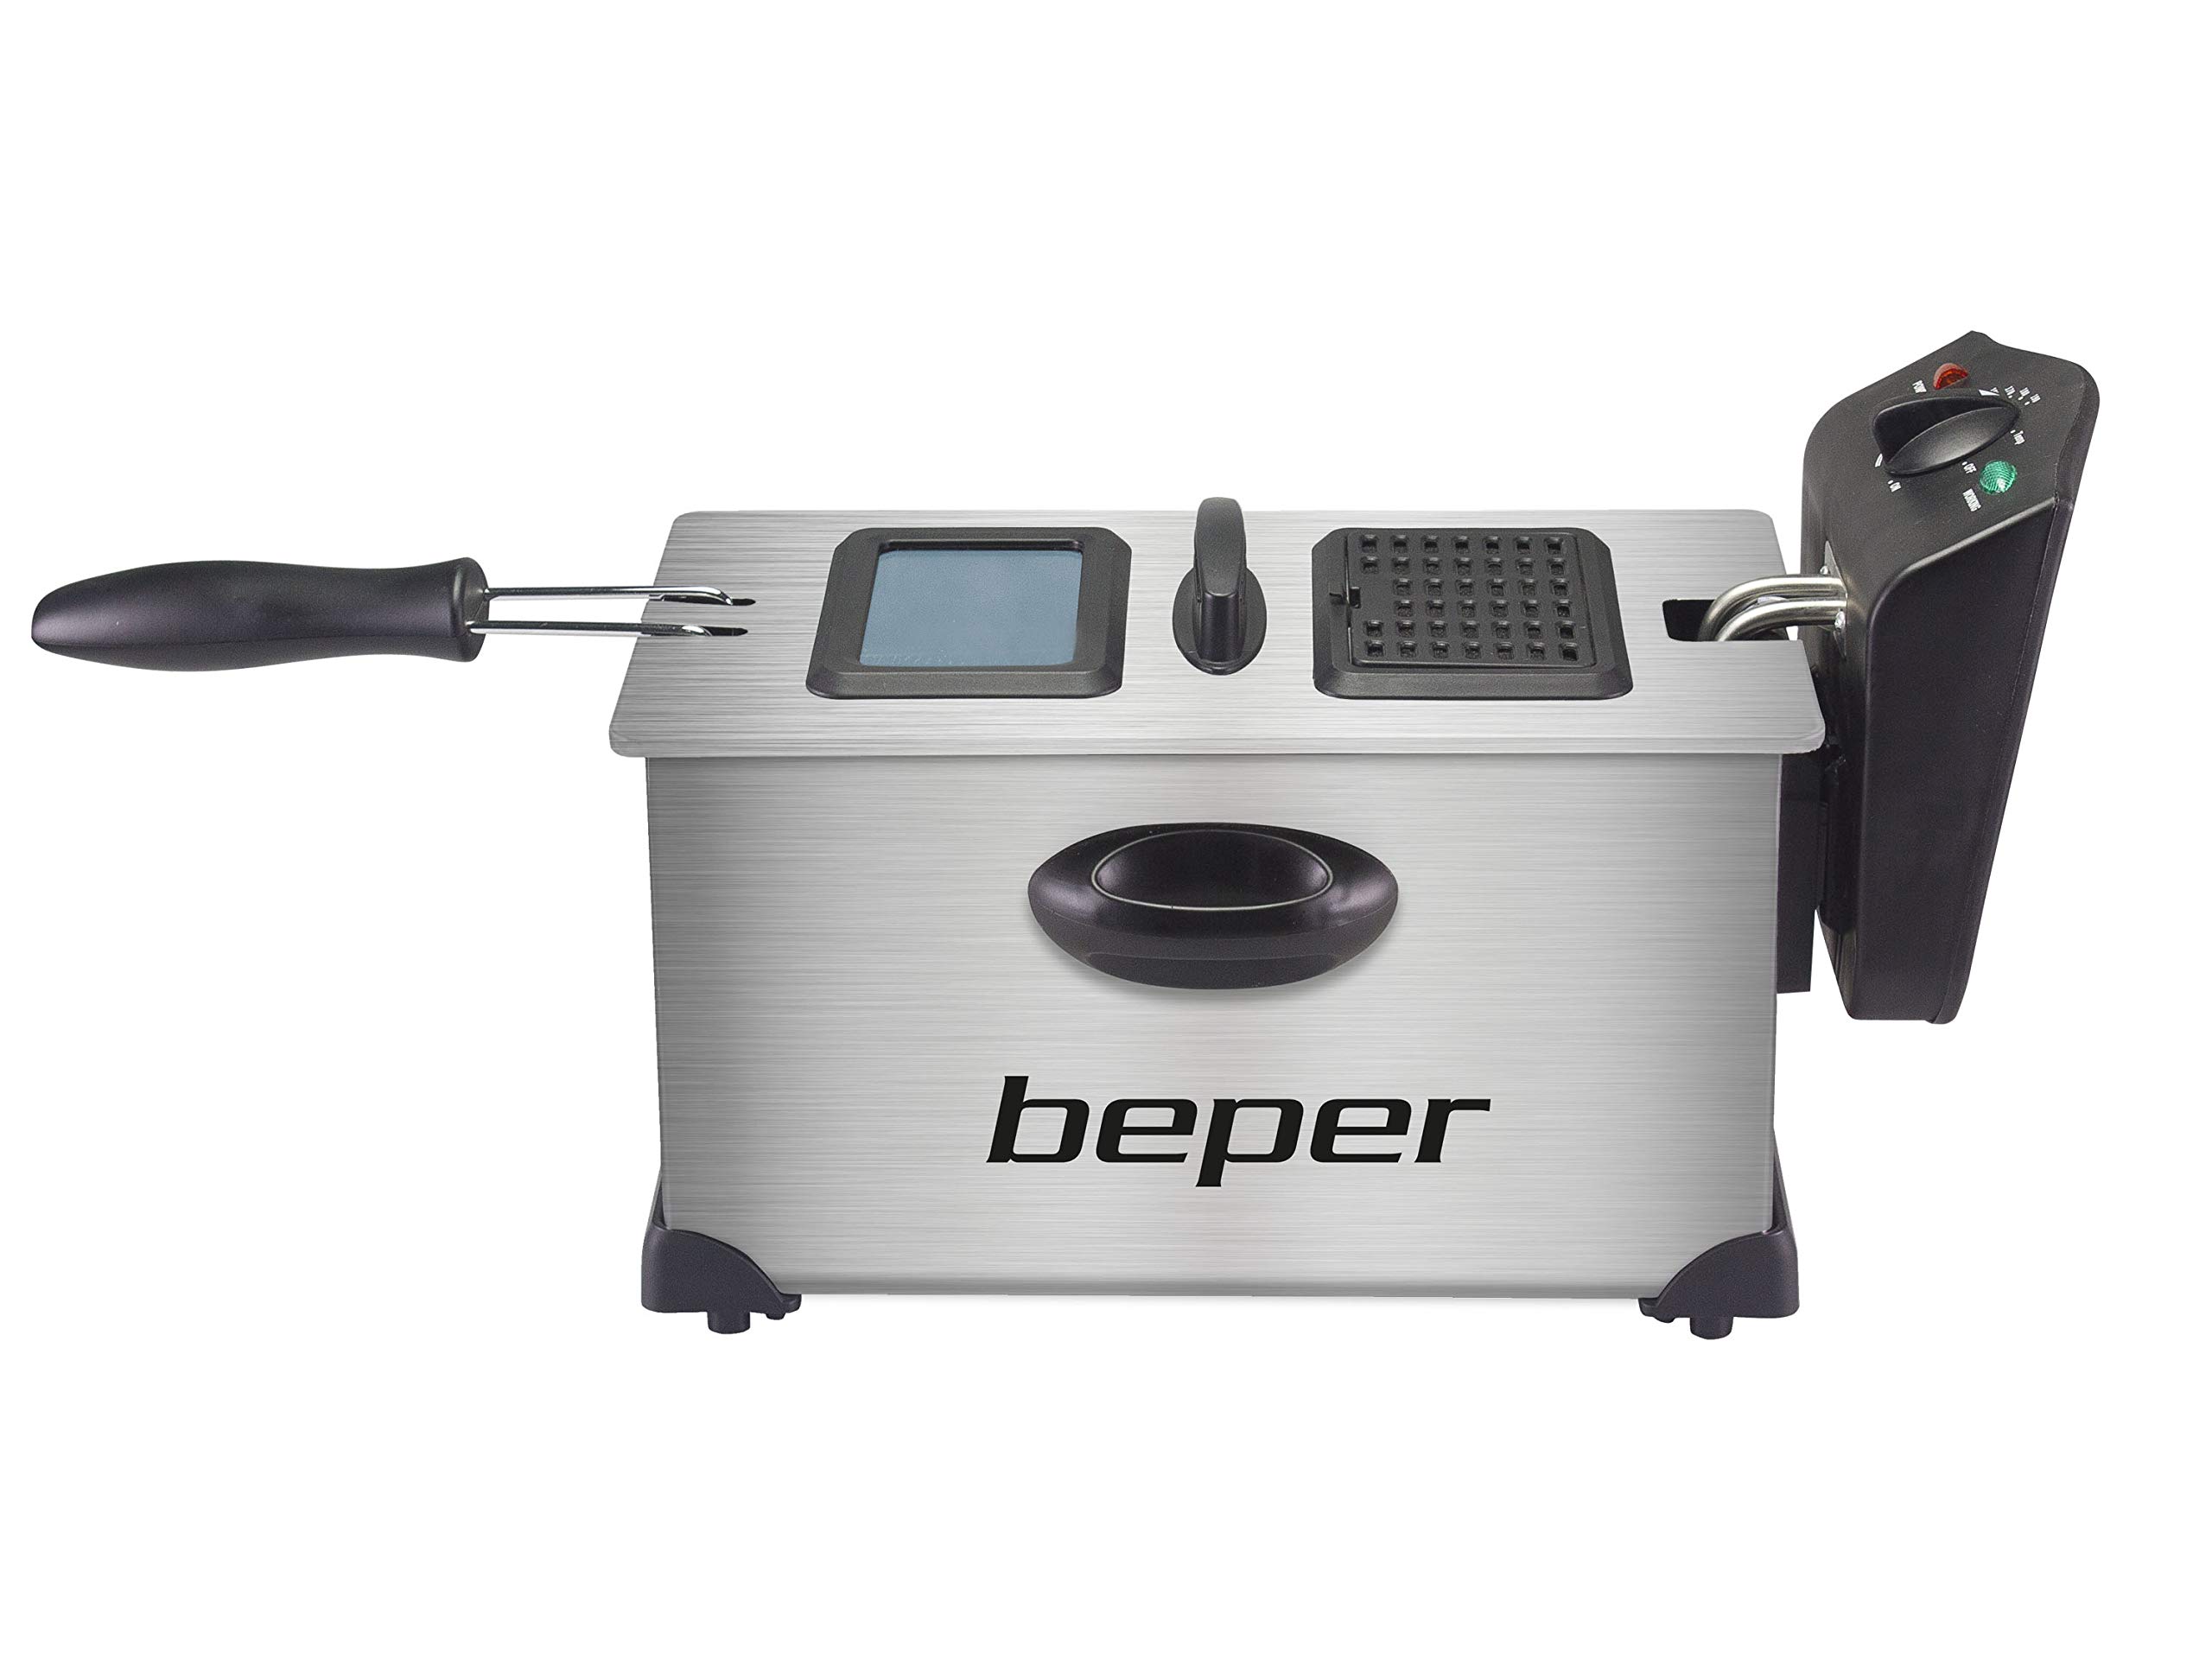 BEPER BC.353 Elektrische Fritteuse 3.5L aus Stahl, 2000 W, Temperatur bis 190°C, Stahlbehälter und Filter gegen rudernden Geruch für einfache Reinigung, Schwarz